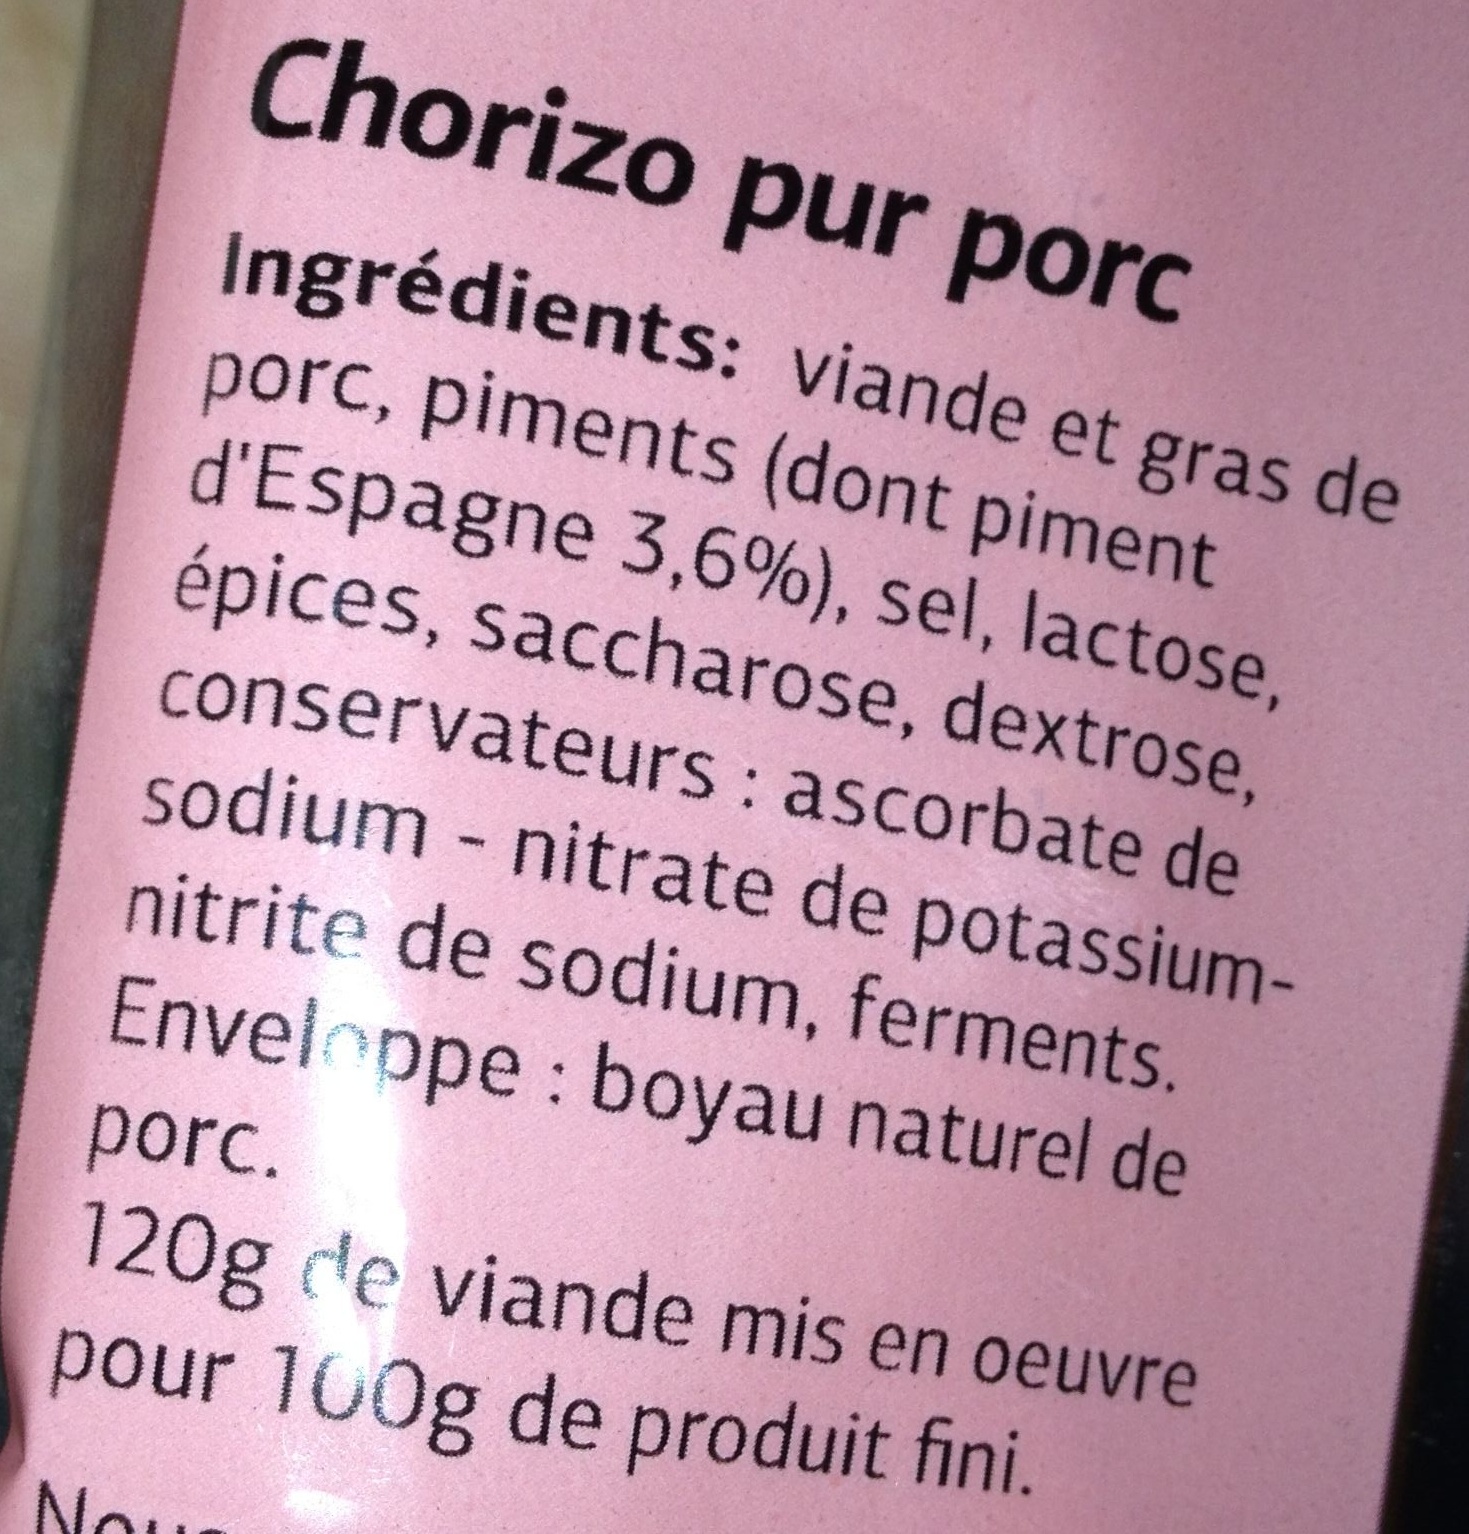 Chorizo Pur Porc (Fort) au Piment d'Espagne - Ingrédients